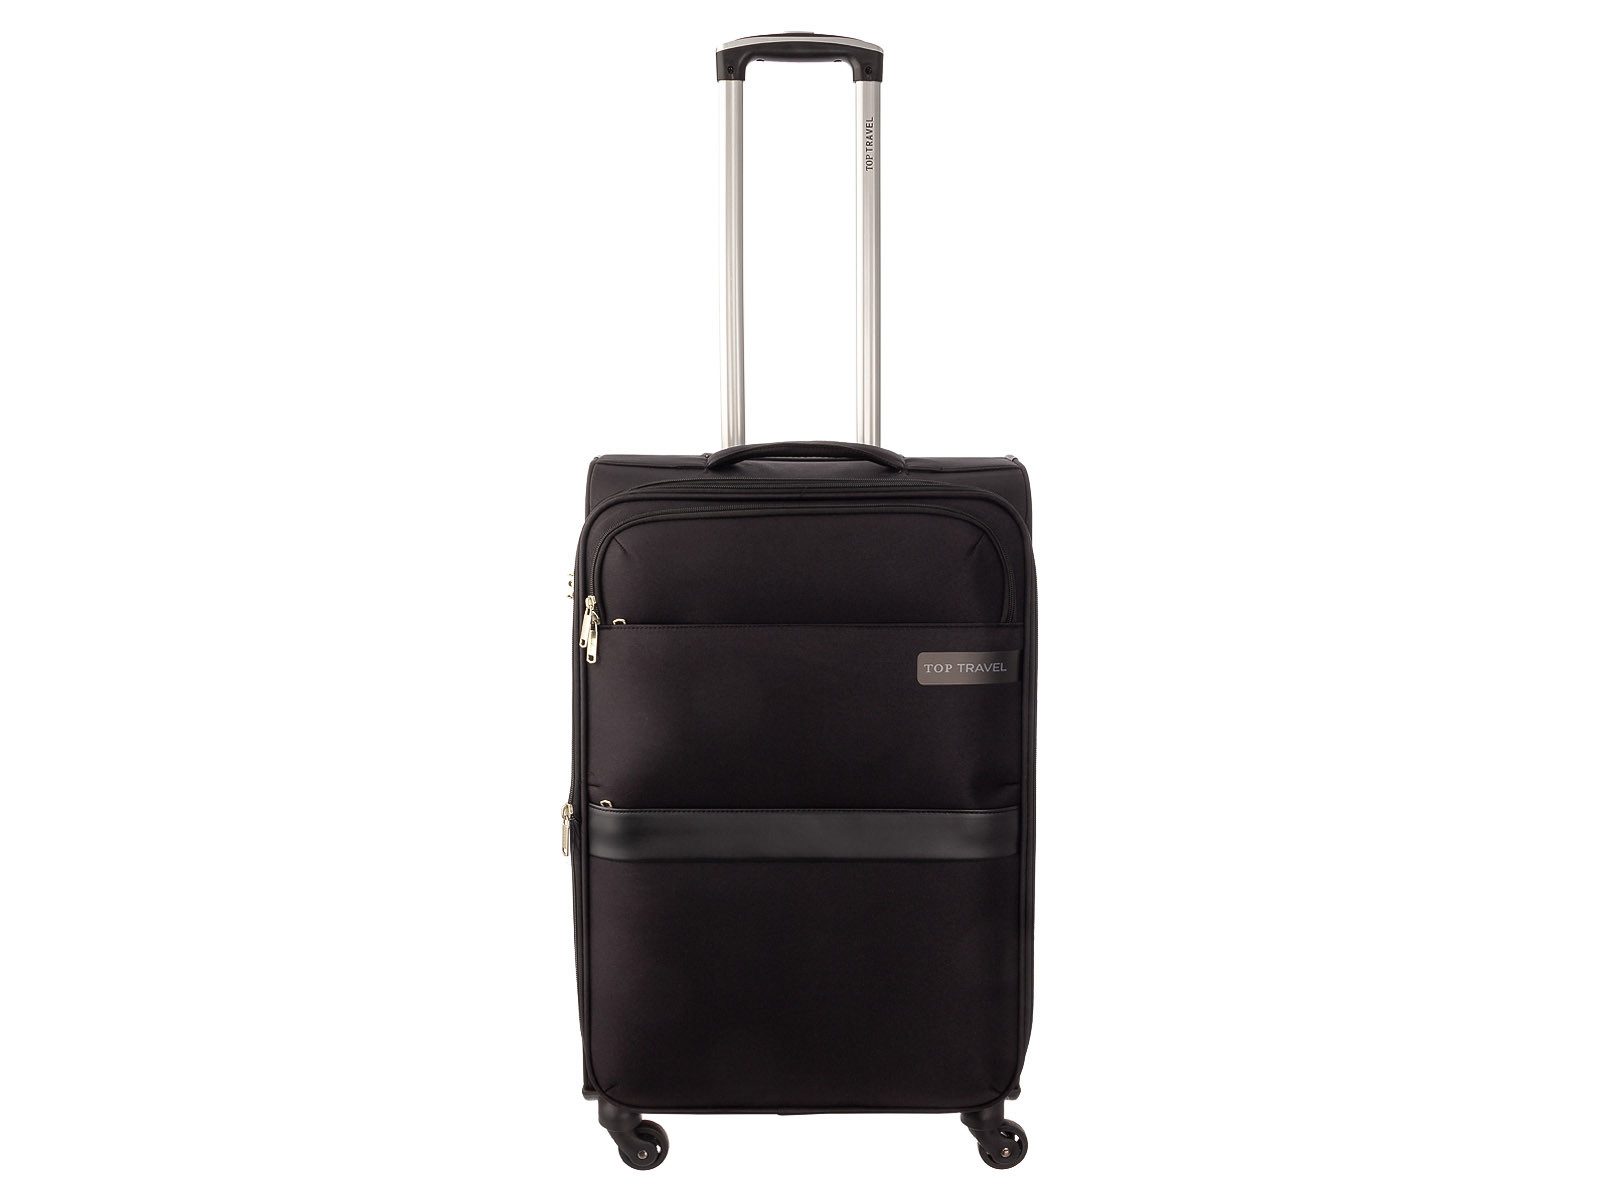 Top Travel Koffer Koffer Spinner 42243060, 4 Rollen, Dehnfalte